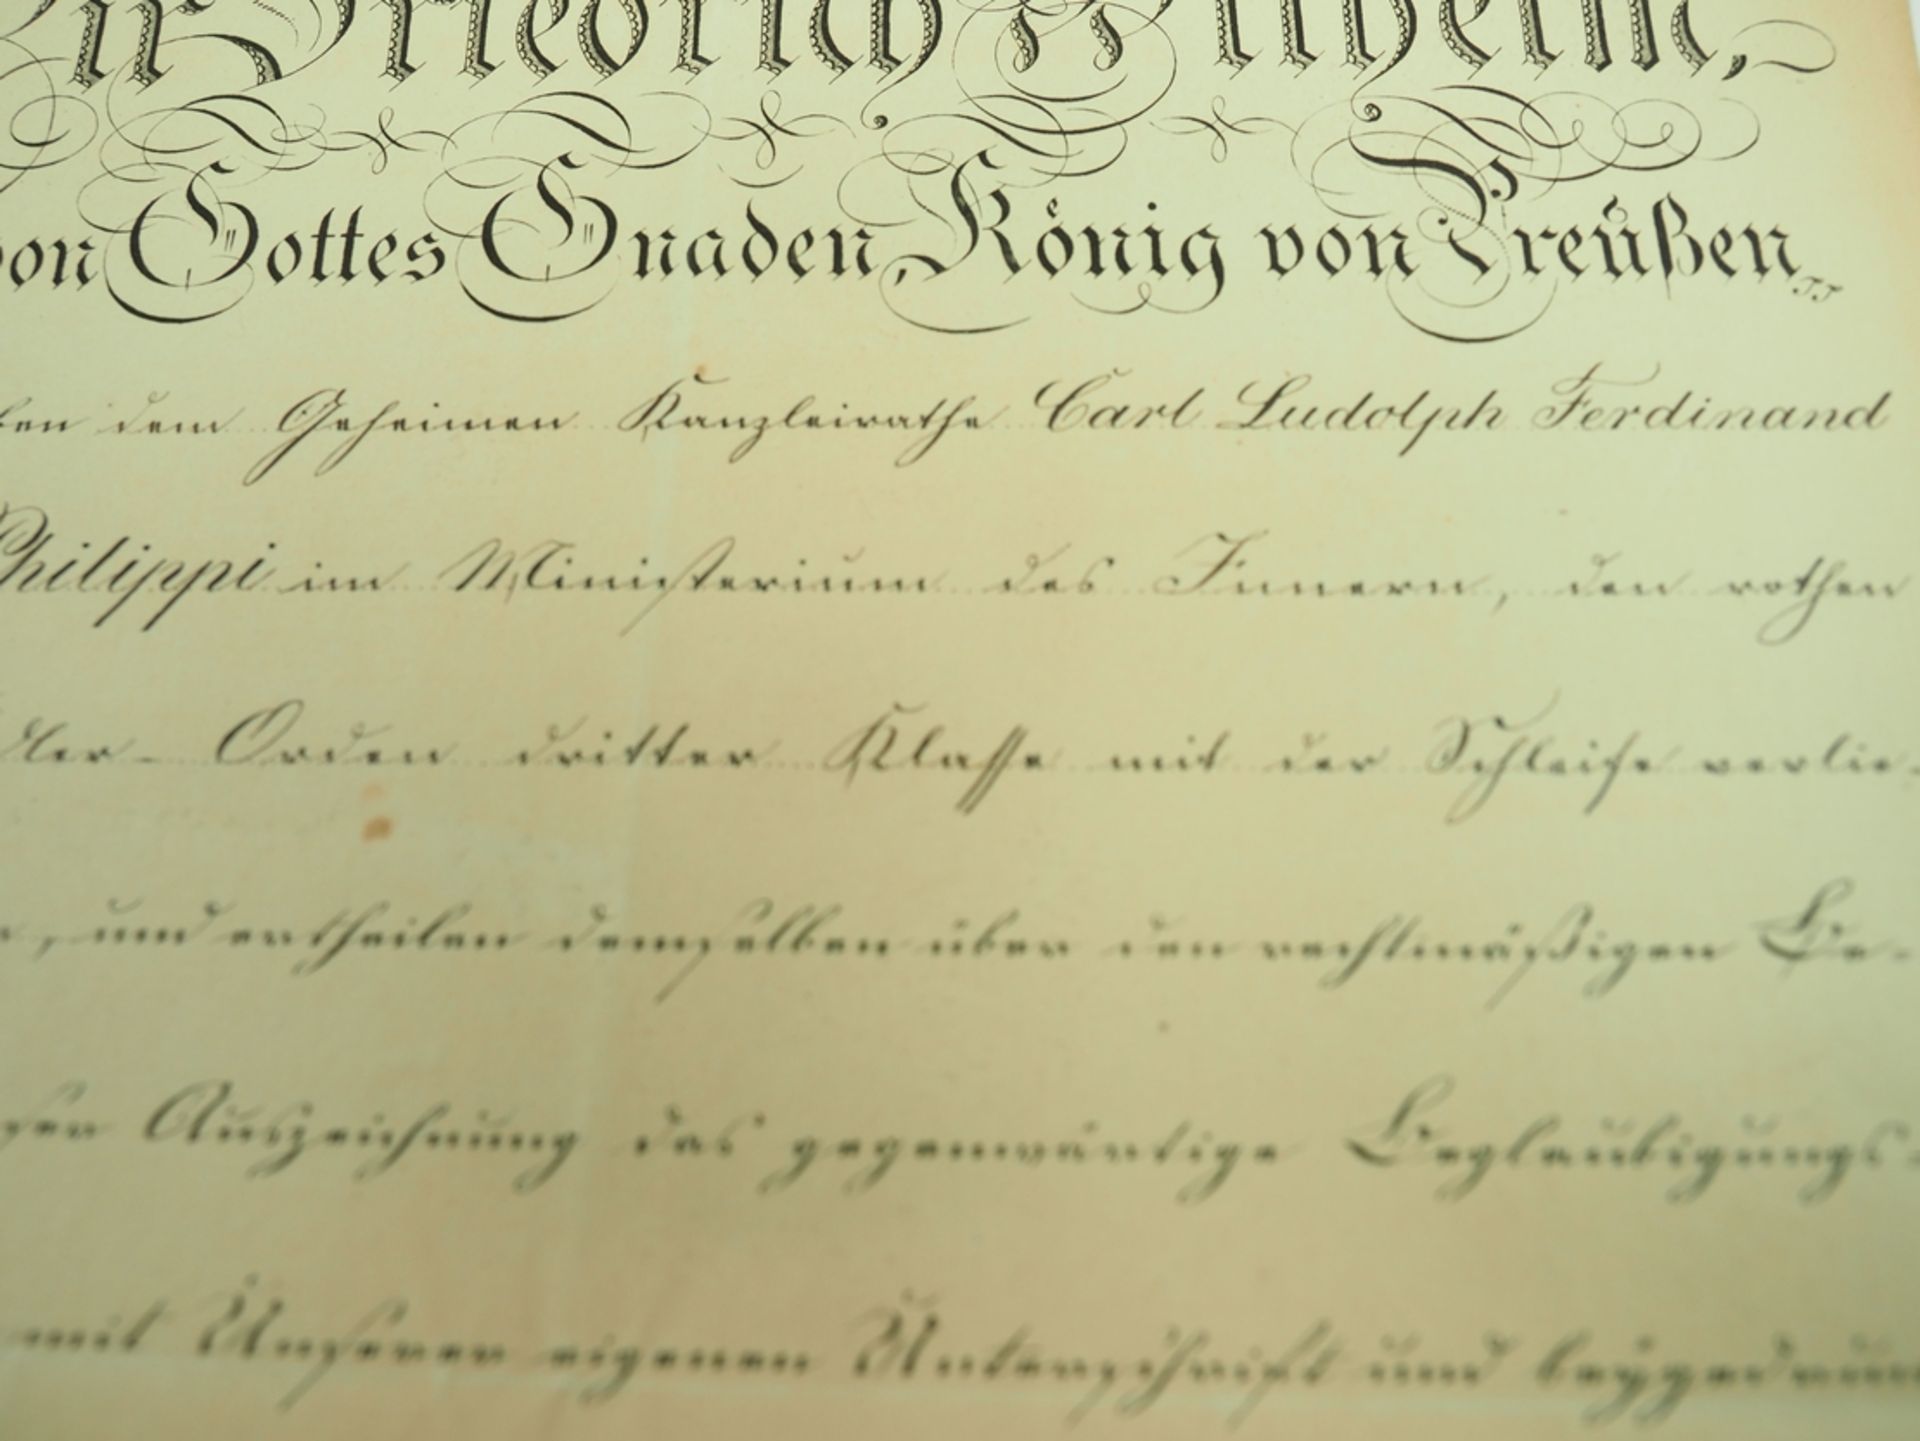 Preussen: Roter Adler Orden, 3. Klasse mit der Schleife Urkunde für einen Geheimen Kanzleirath im M - Image 3 of 3